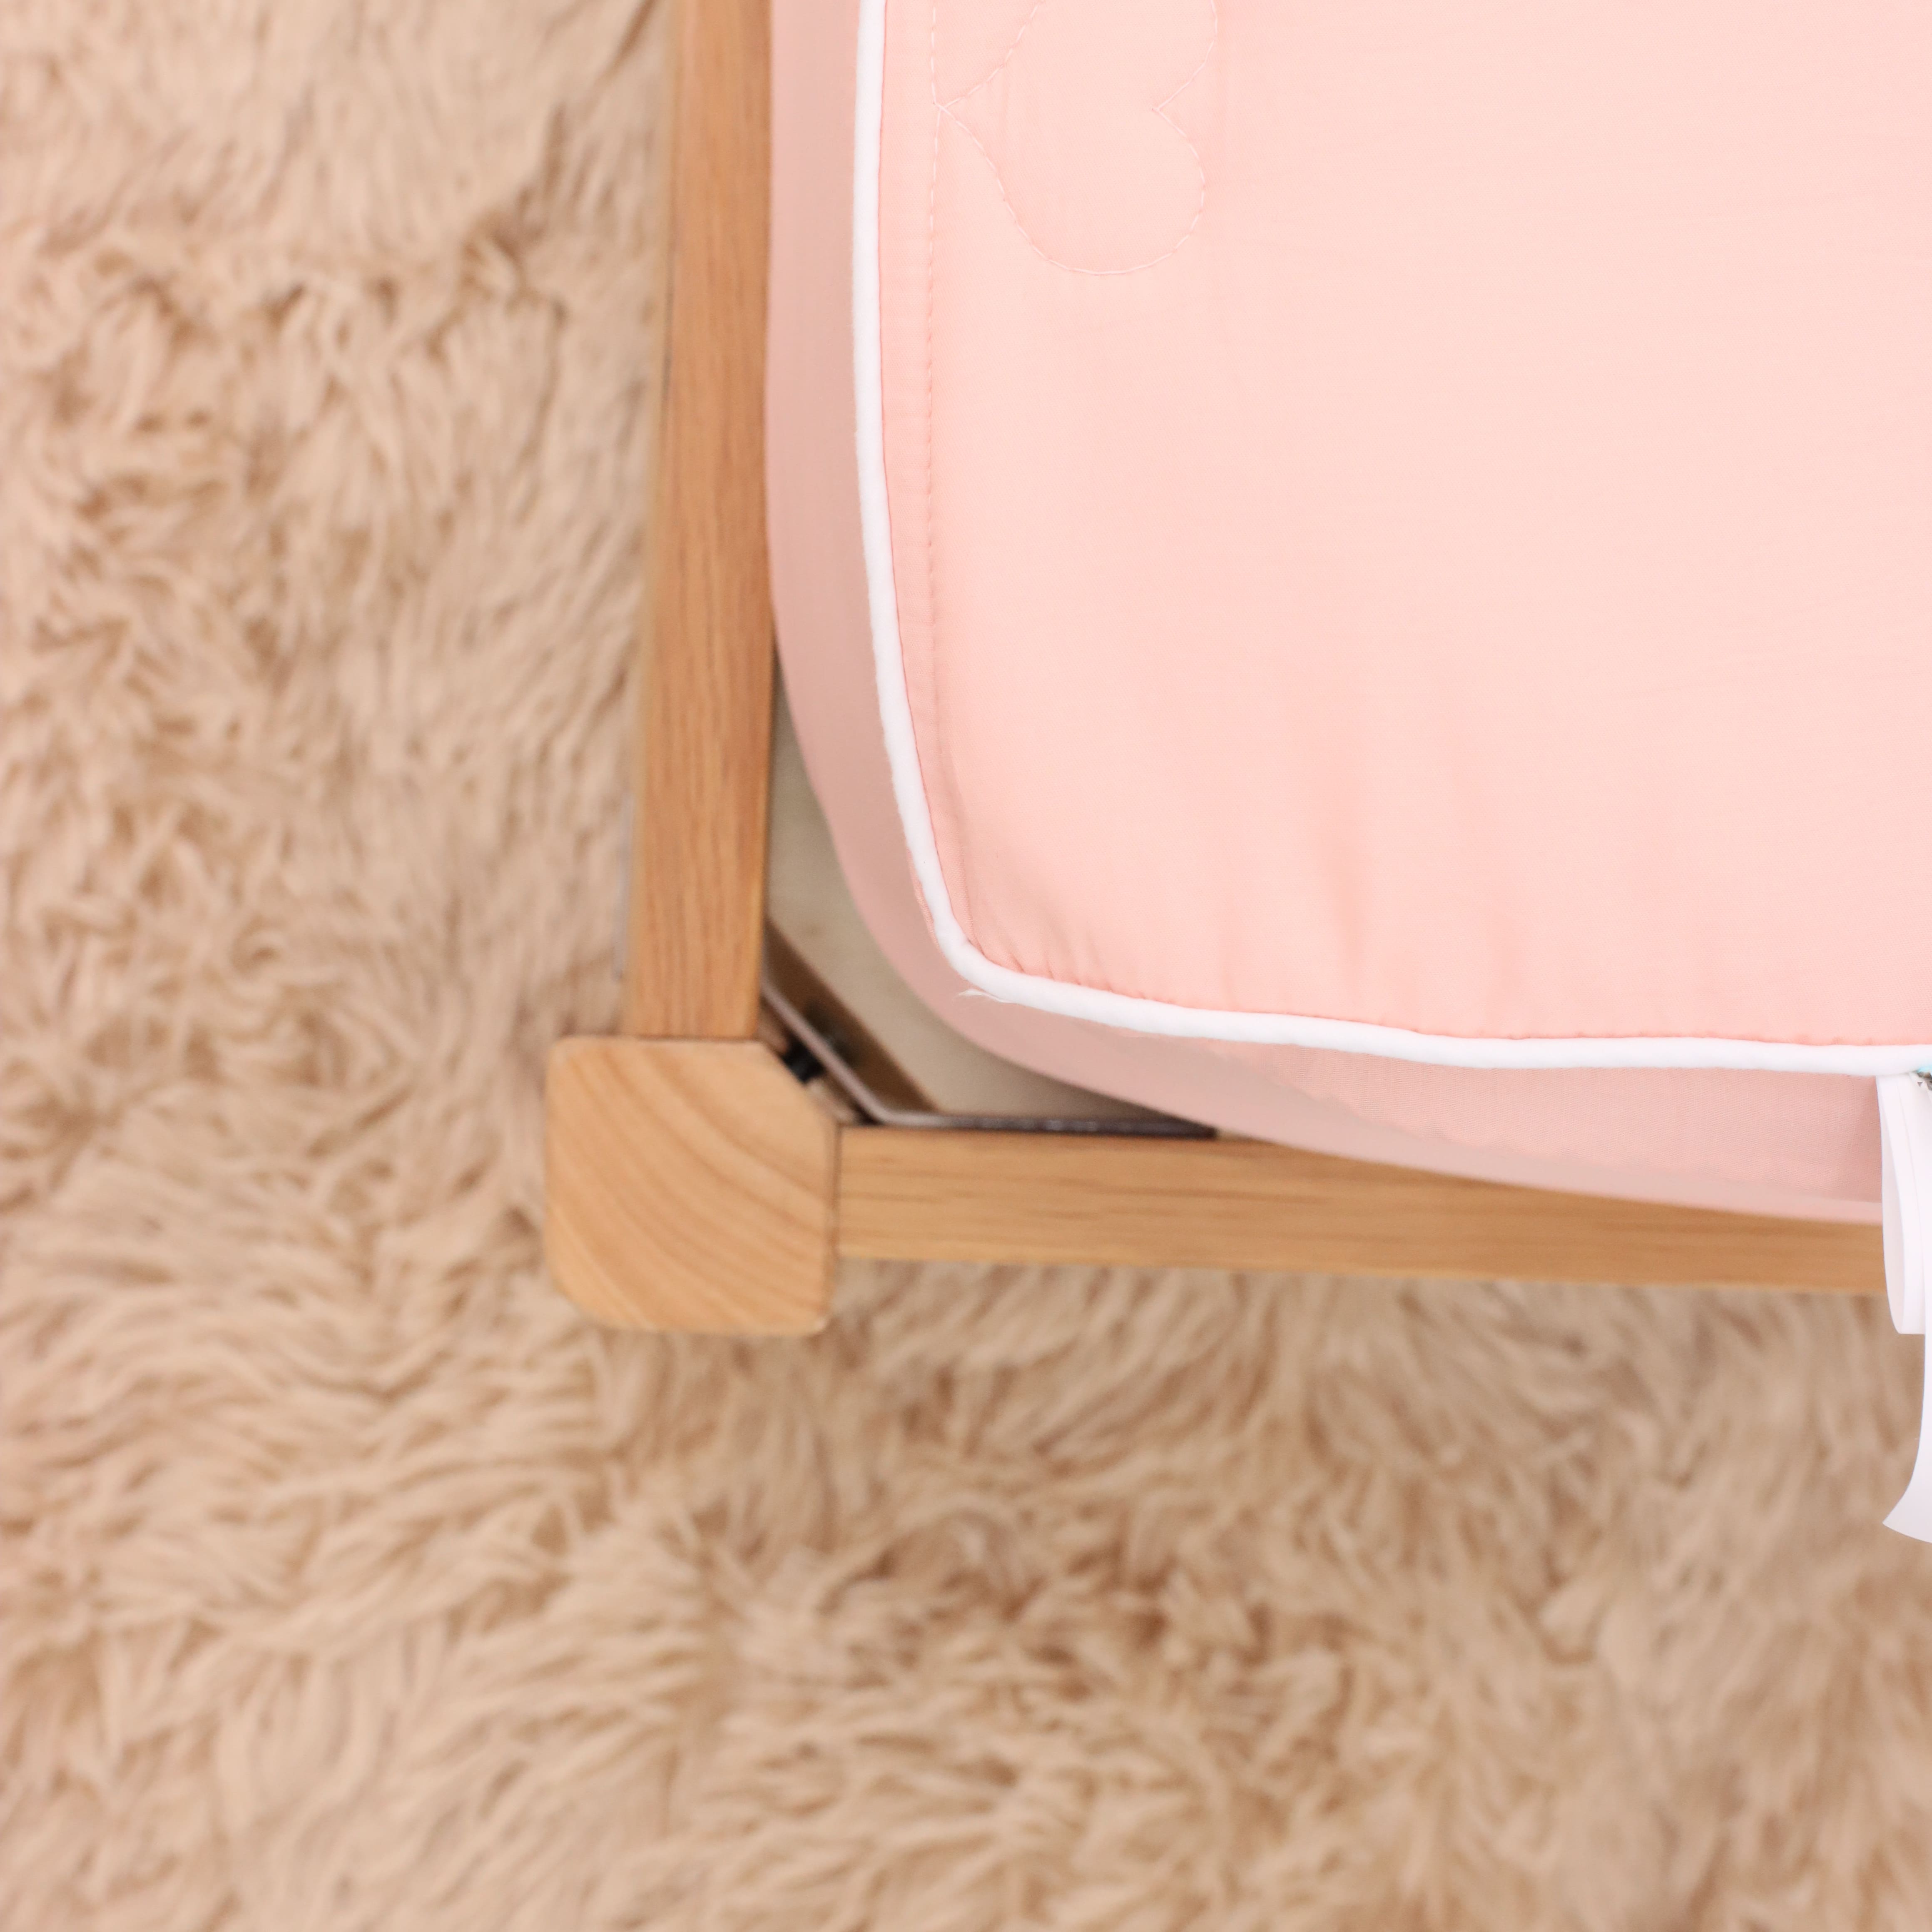 Bộ ga giường chần bông K-Bedding by Everon KNTS chất vải Ice-tencel thoáng mát, kháng khuẩn